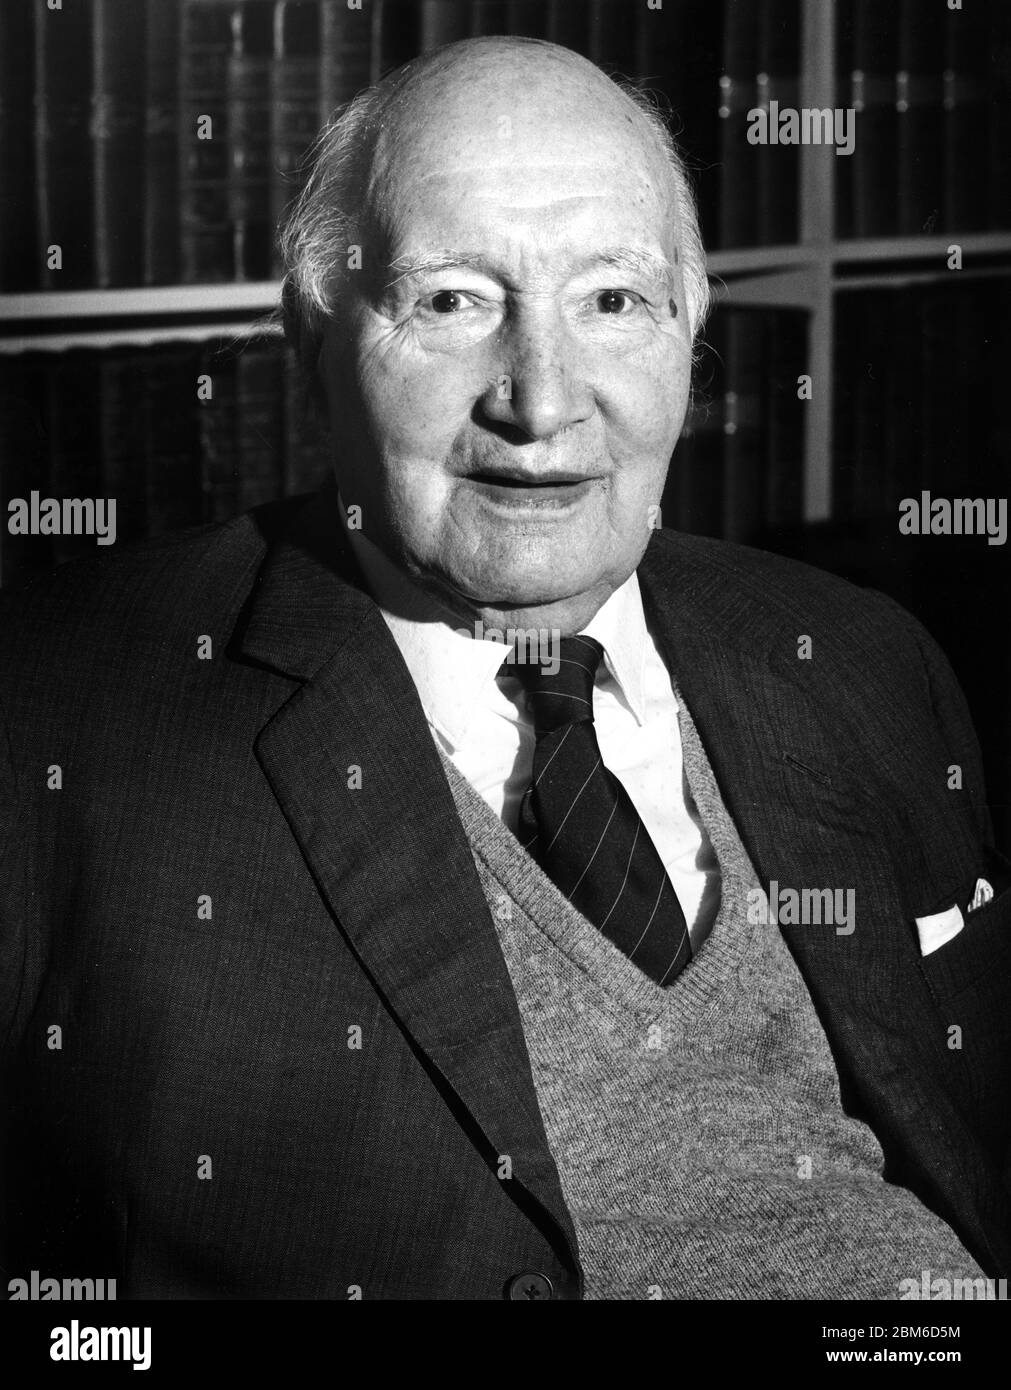 Portrait de Lord Denning - Alfred Thompson 'Tom' Denning, Baron Denning, OM, PC, DL (23 janvier 1899 - 5 mars 1999) photographié à sa maison le 19 février 1994. Ancien Maître des Rolls. Banque D'Images